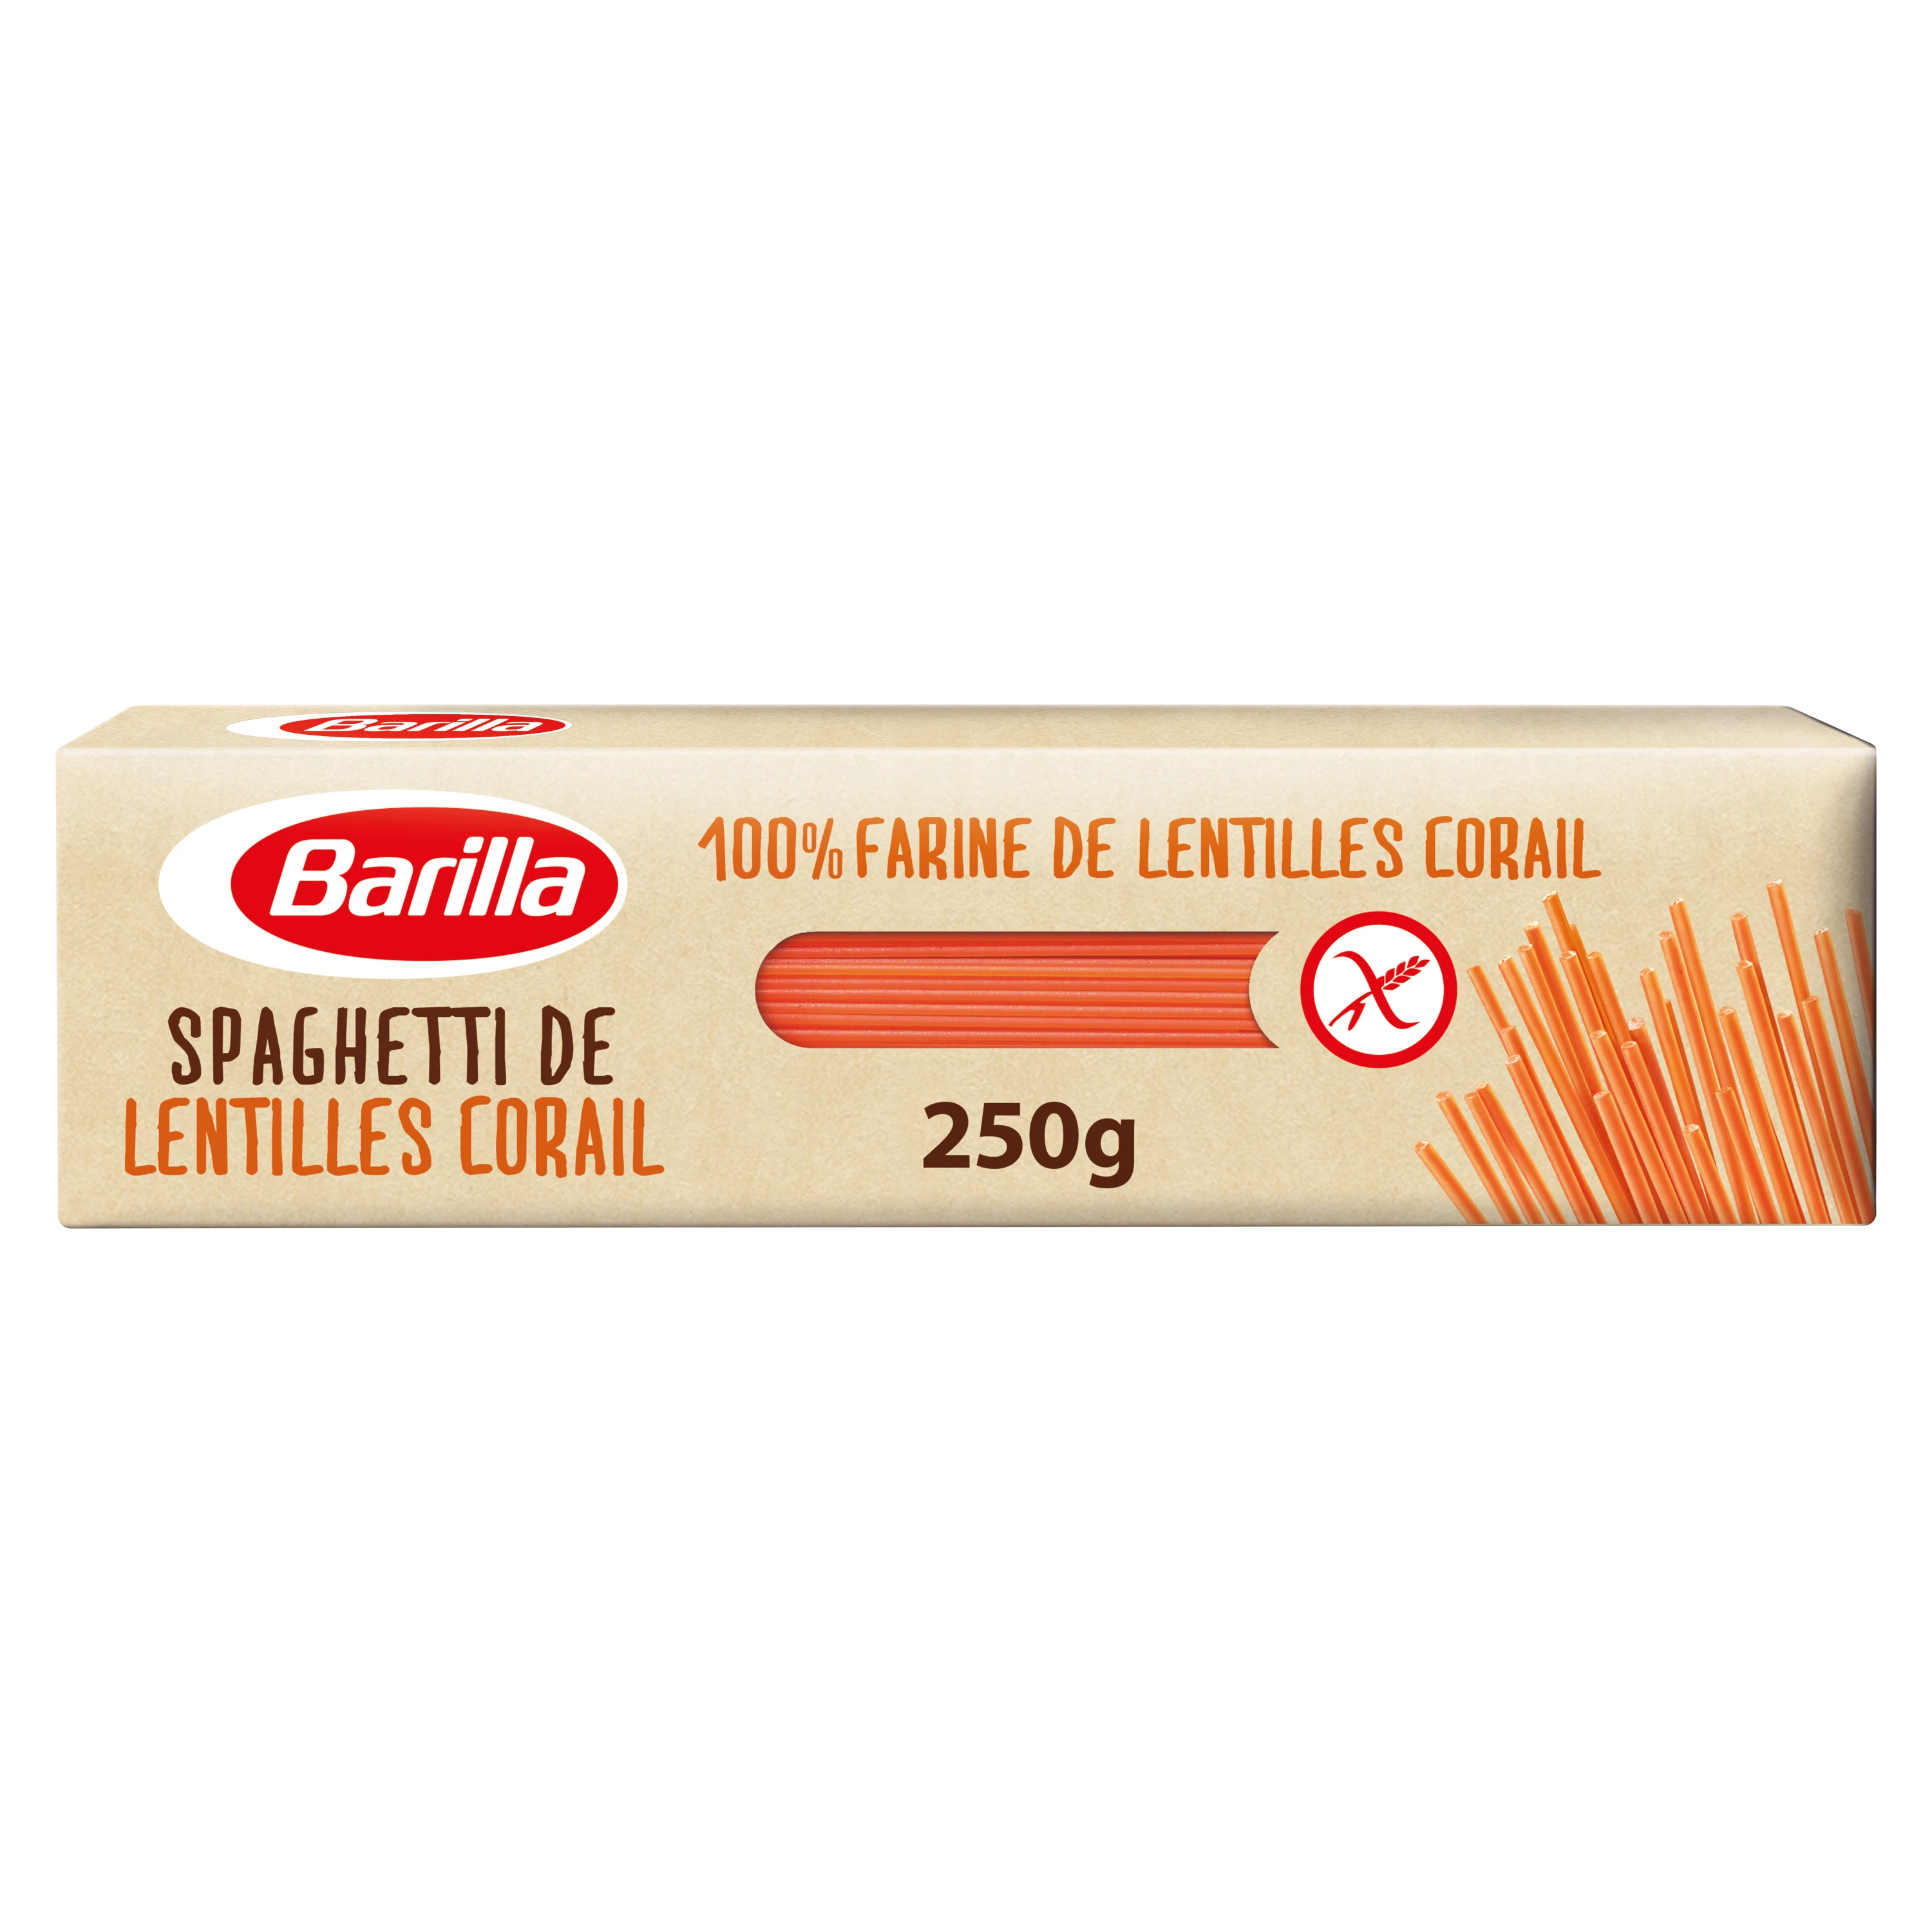 Spaghetti Lentejas.corail 250g